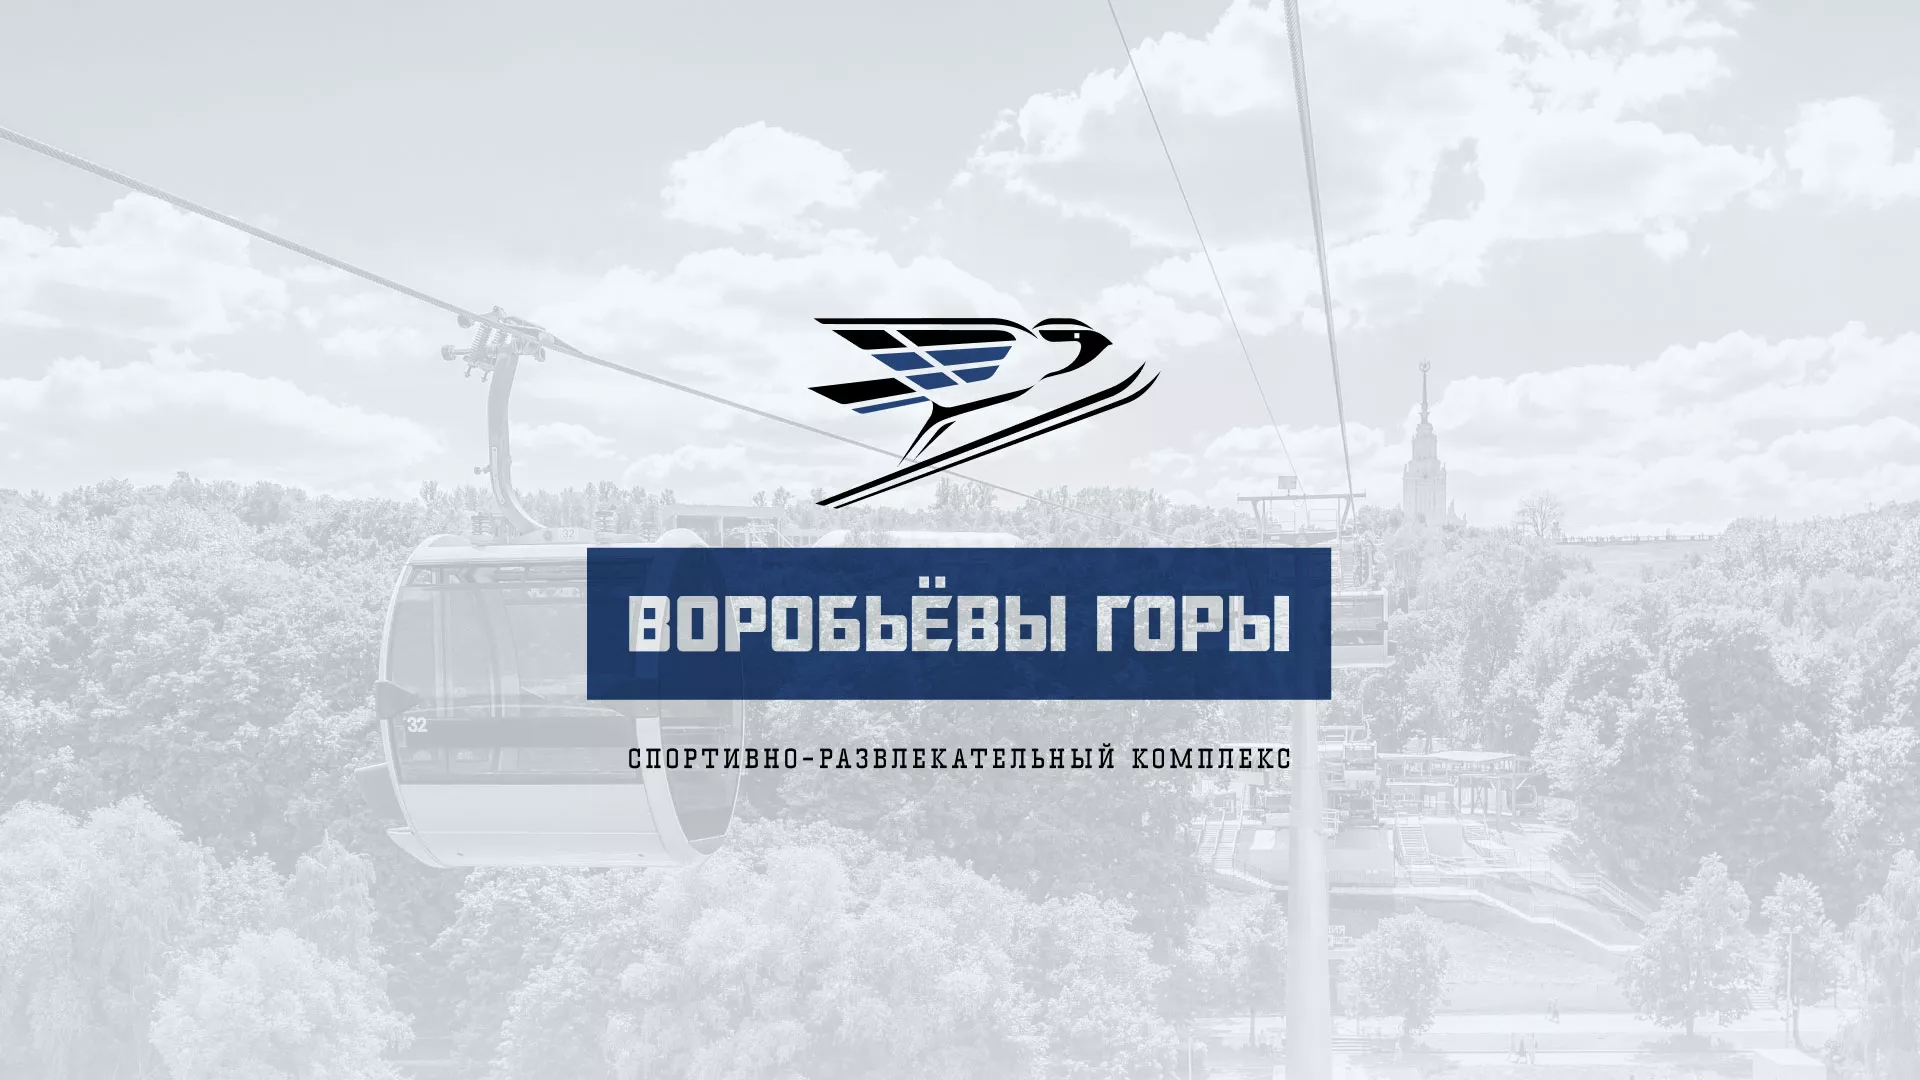 Разработка сайта в Полесске для спортивно-развлекательного комплекса «Воробьёвы горы»